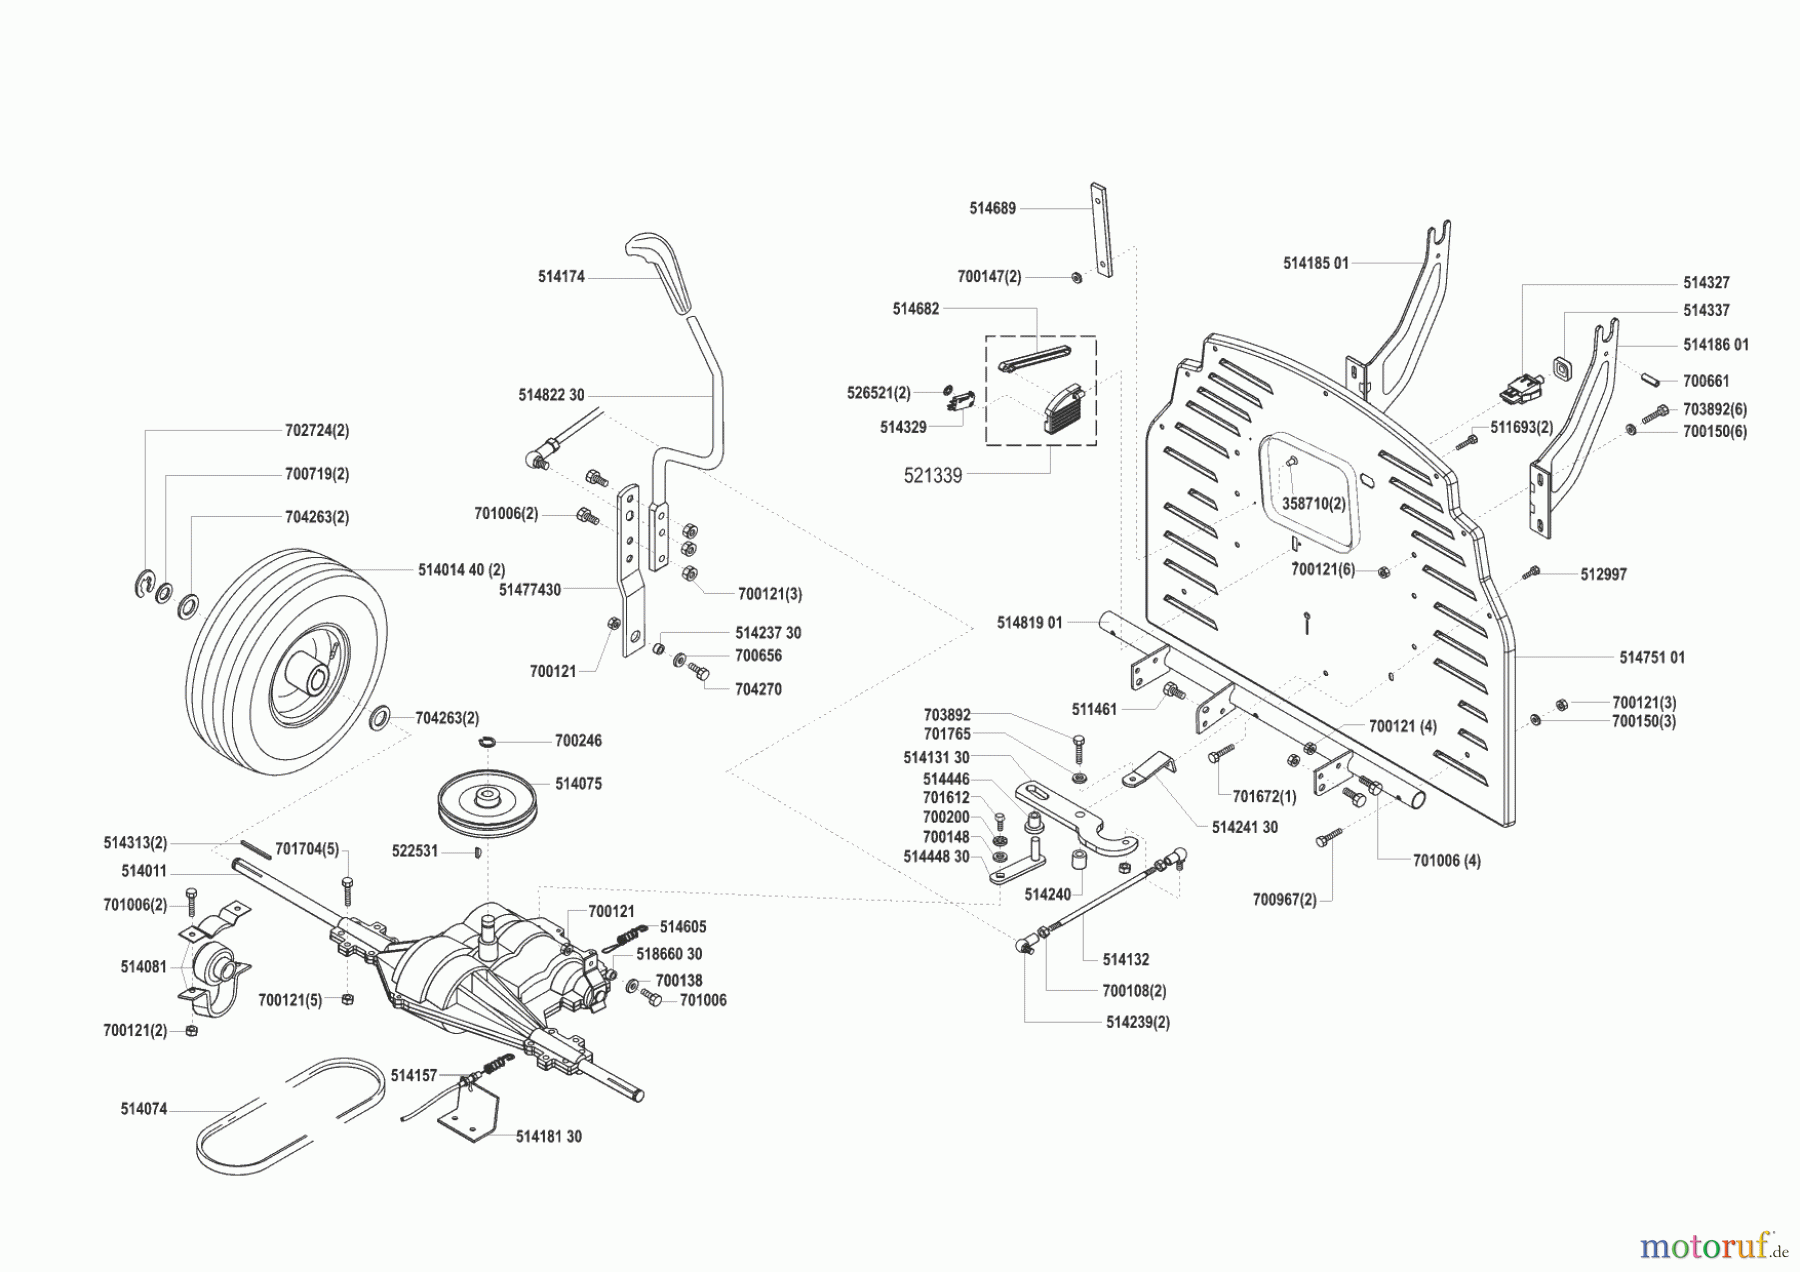  GHD Gartentechnik Rasentraktor T 10 vor 01/2001 Seite 3